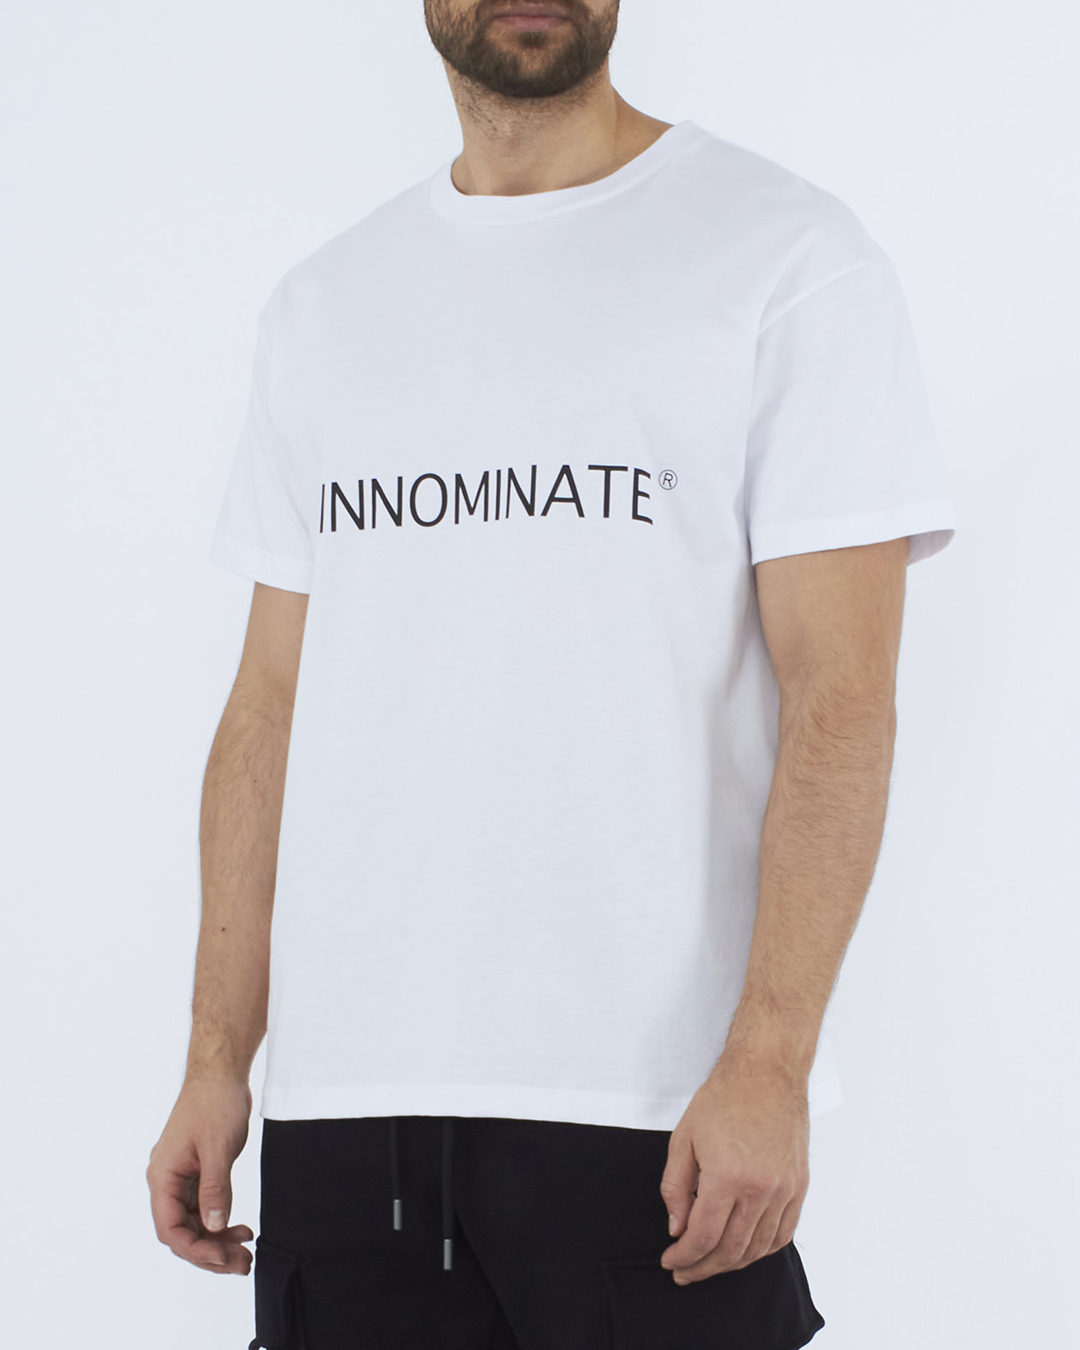 футболка HINNOMINATE HNM67STMM белый+черный s, размер s, цвет белый+черный HNM67STMM белый+черный s - фото 3